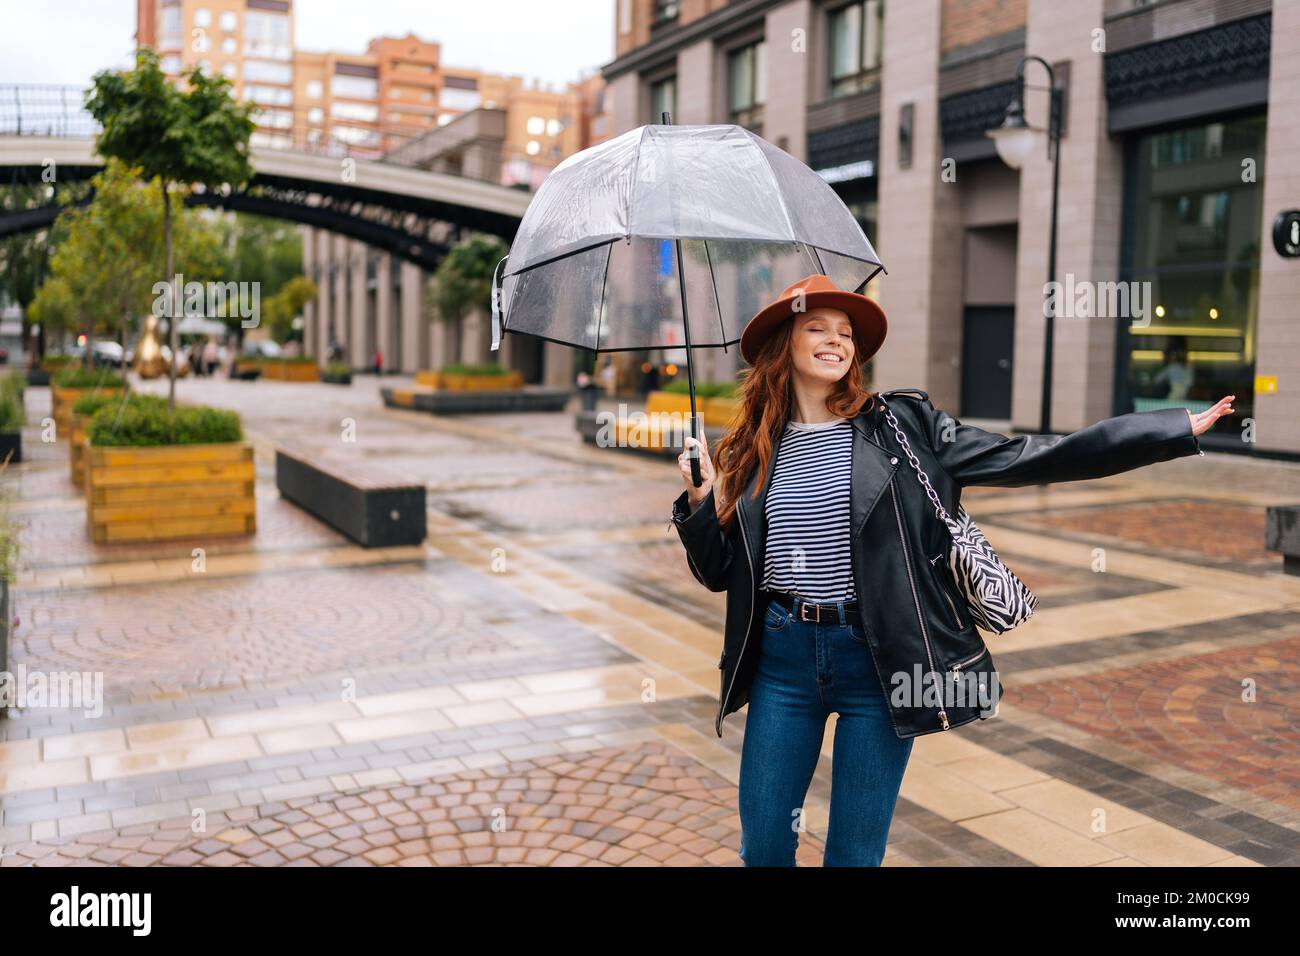 Joyeuse et excitée jeune femme dans un élégant chapeau dansant et s'amusant avec un parapluie transparent sur une belle rue de la ville, en profitant du temps pluvieux dehors Banque D'Images